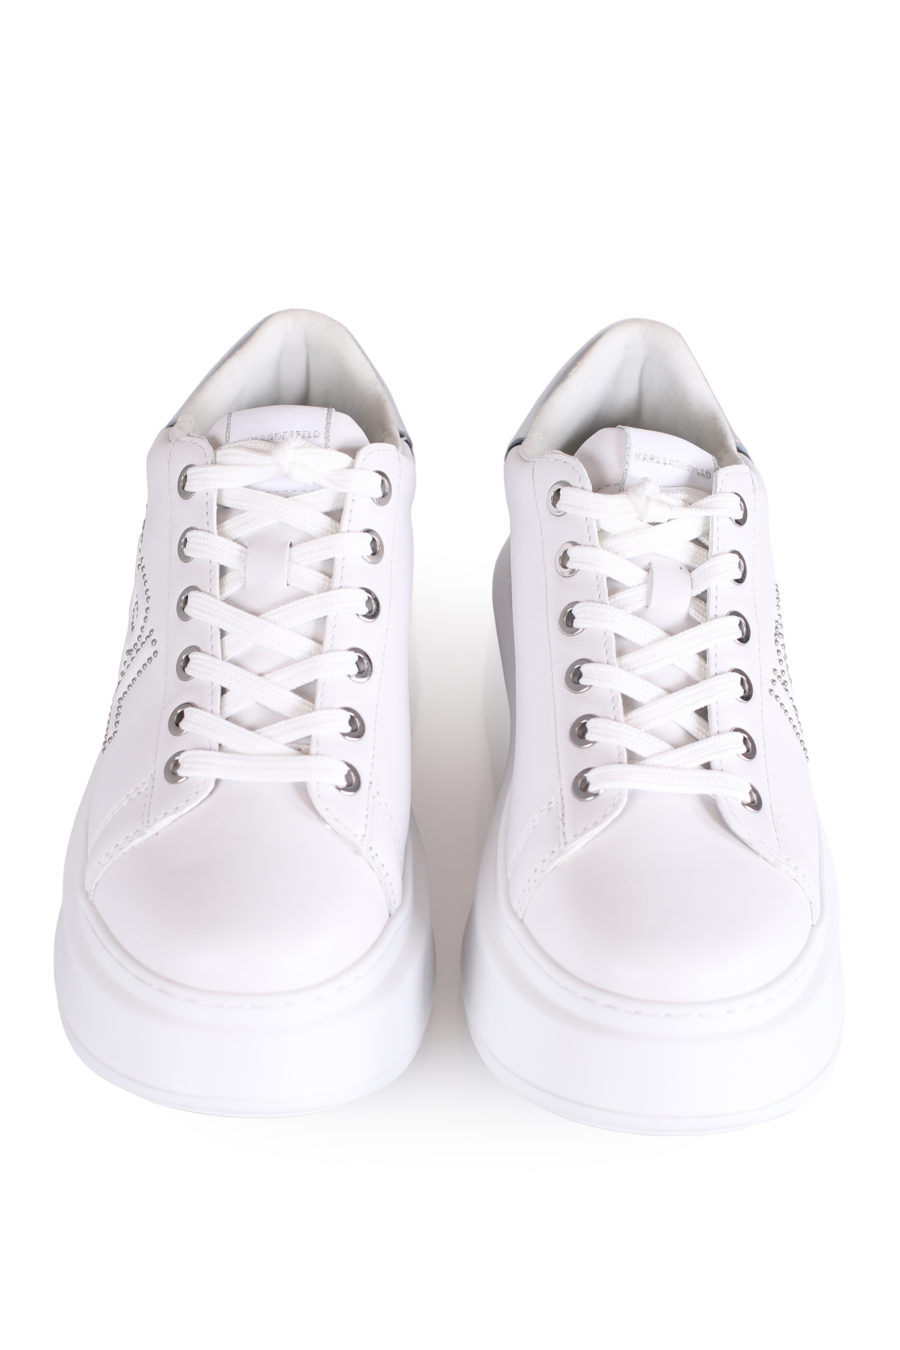 Zapatillas blancas con suela alta y logo de la marca - IMG 0780